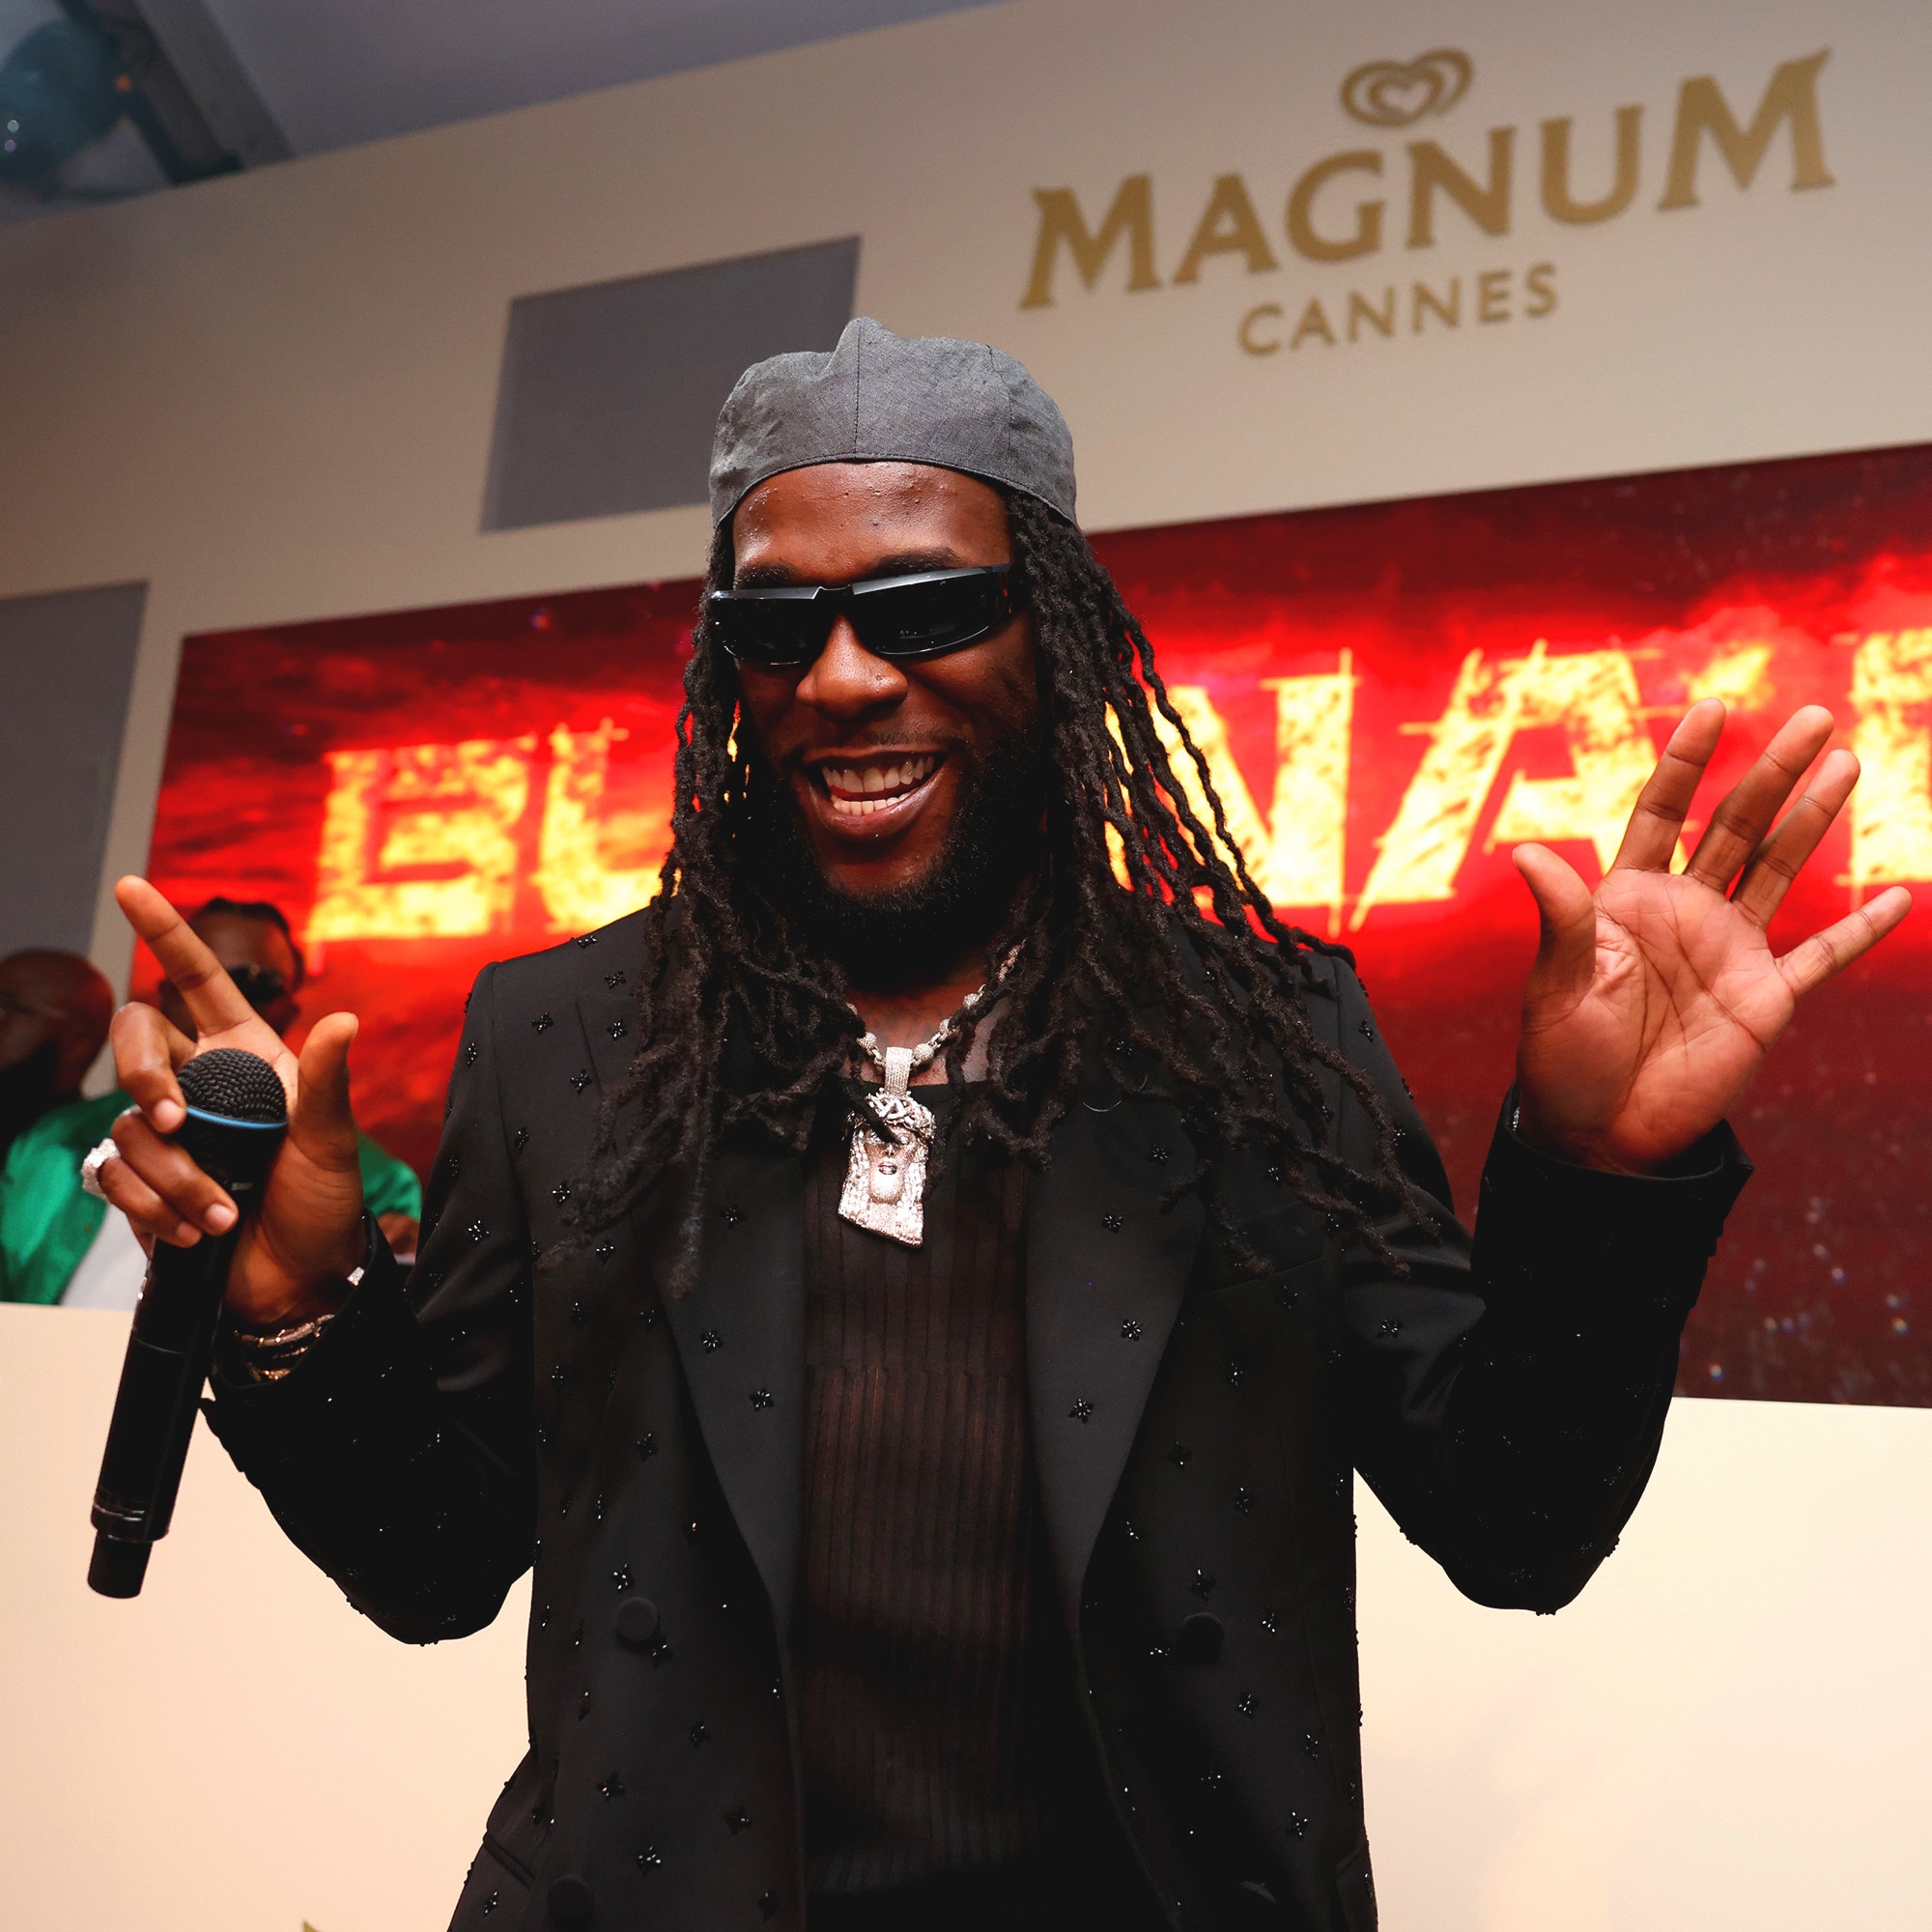 Sänger Burna Boy auf der Bühne bei der Magnum-Party in Cannes